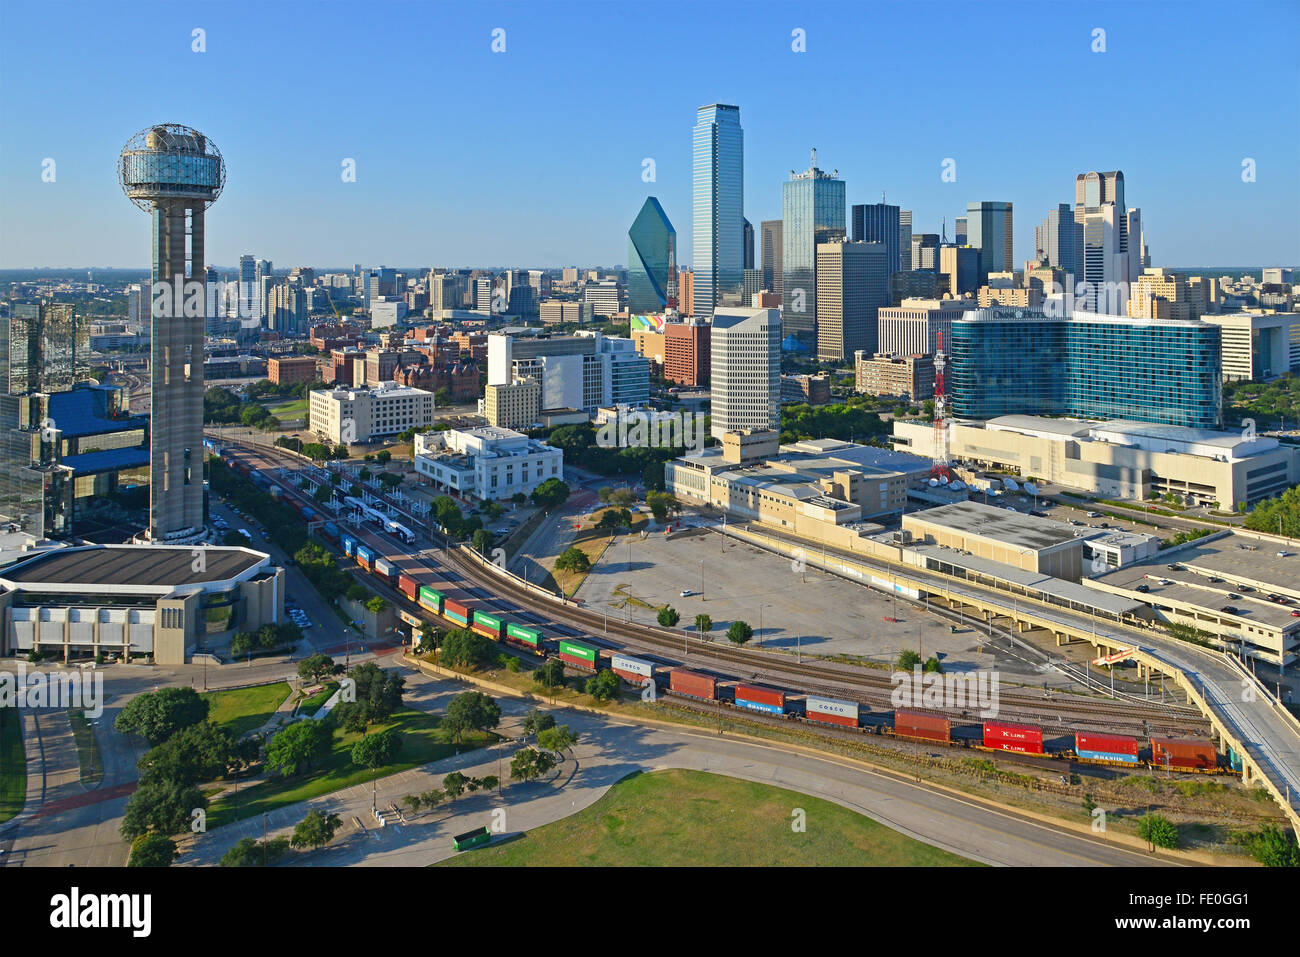 Downtown Dallas, Texas Stock Photo